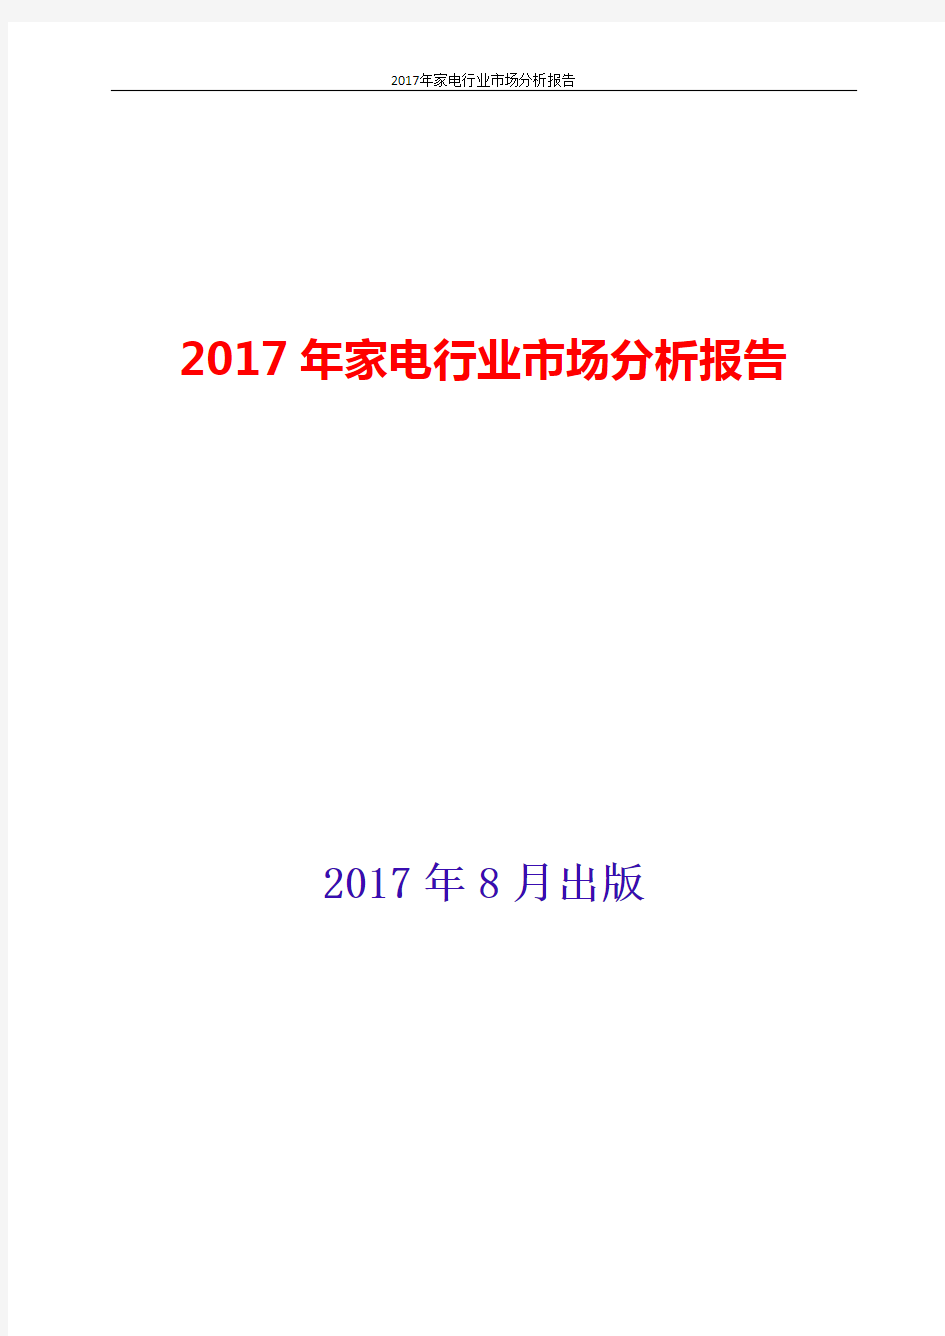 家电行业市场分析报告2017-2018年版